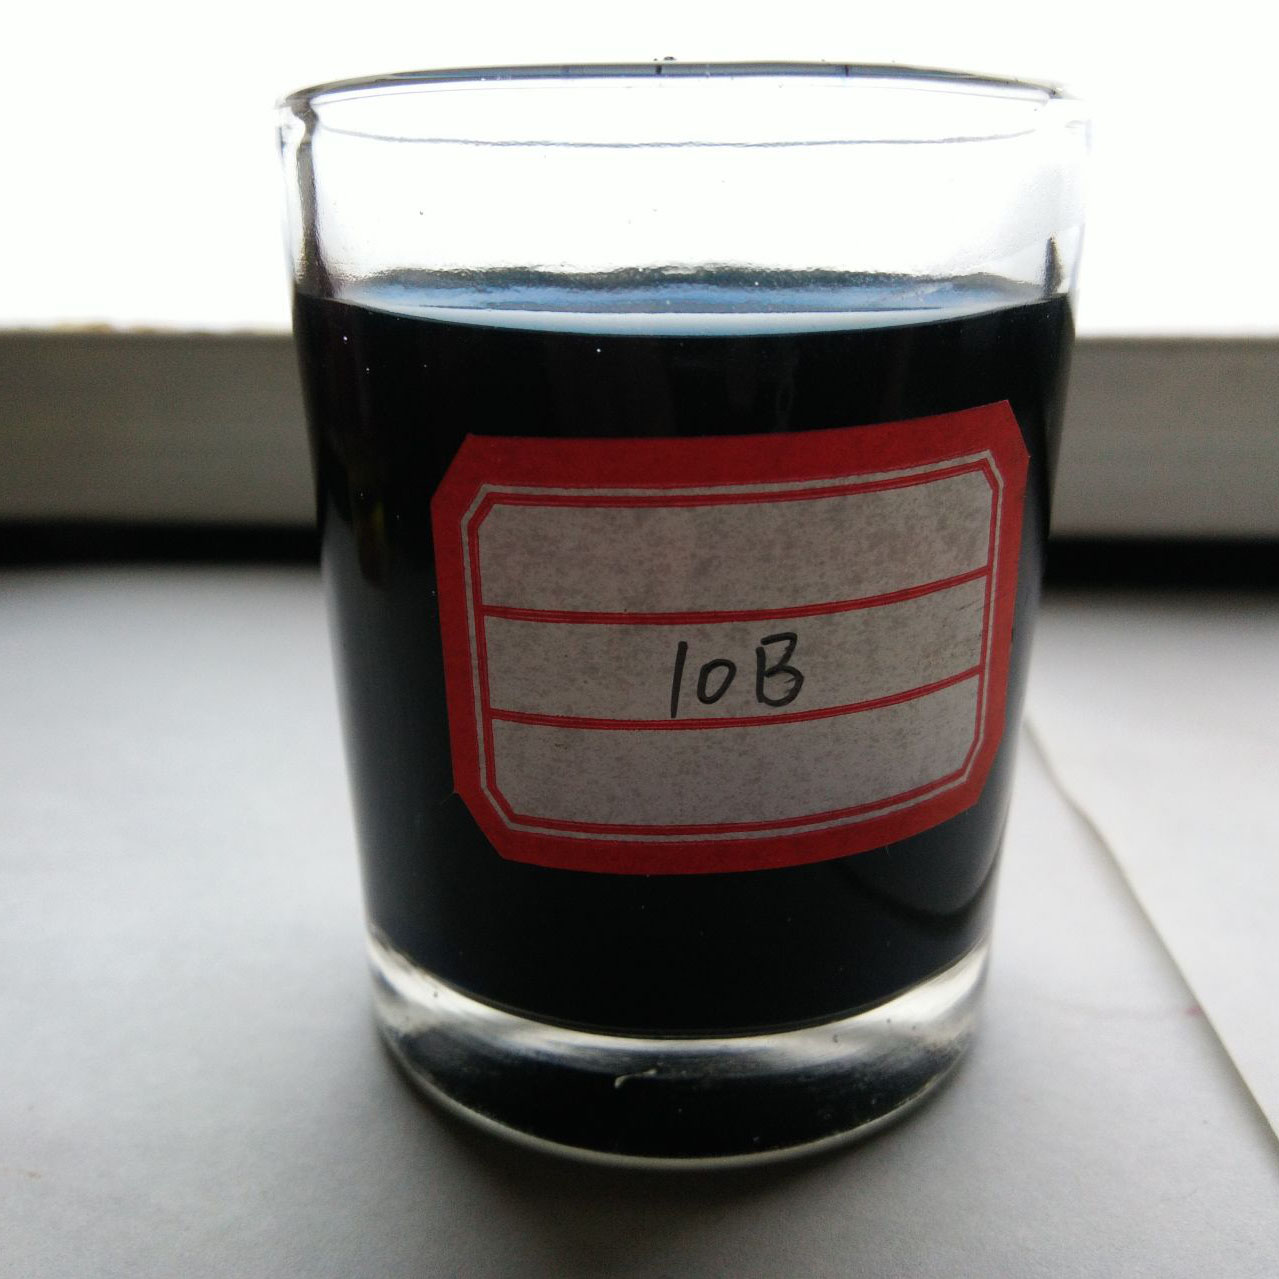 A legjobb ár-érték arány Acid Black ATT 100% Fekete púder selyemre használt